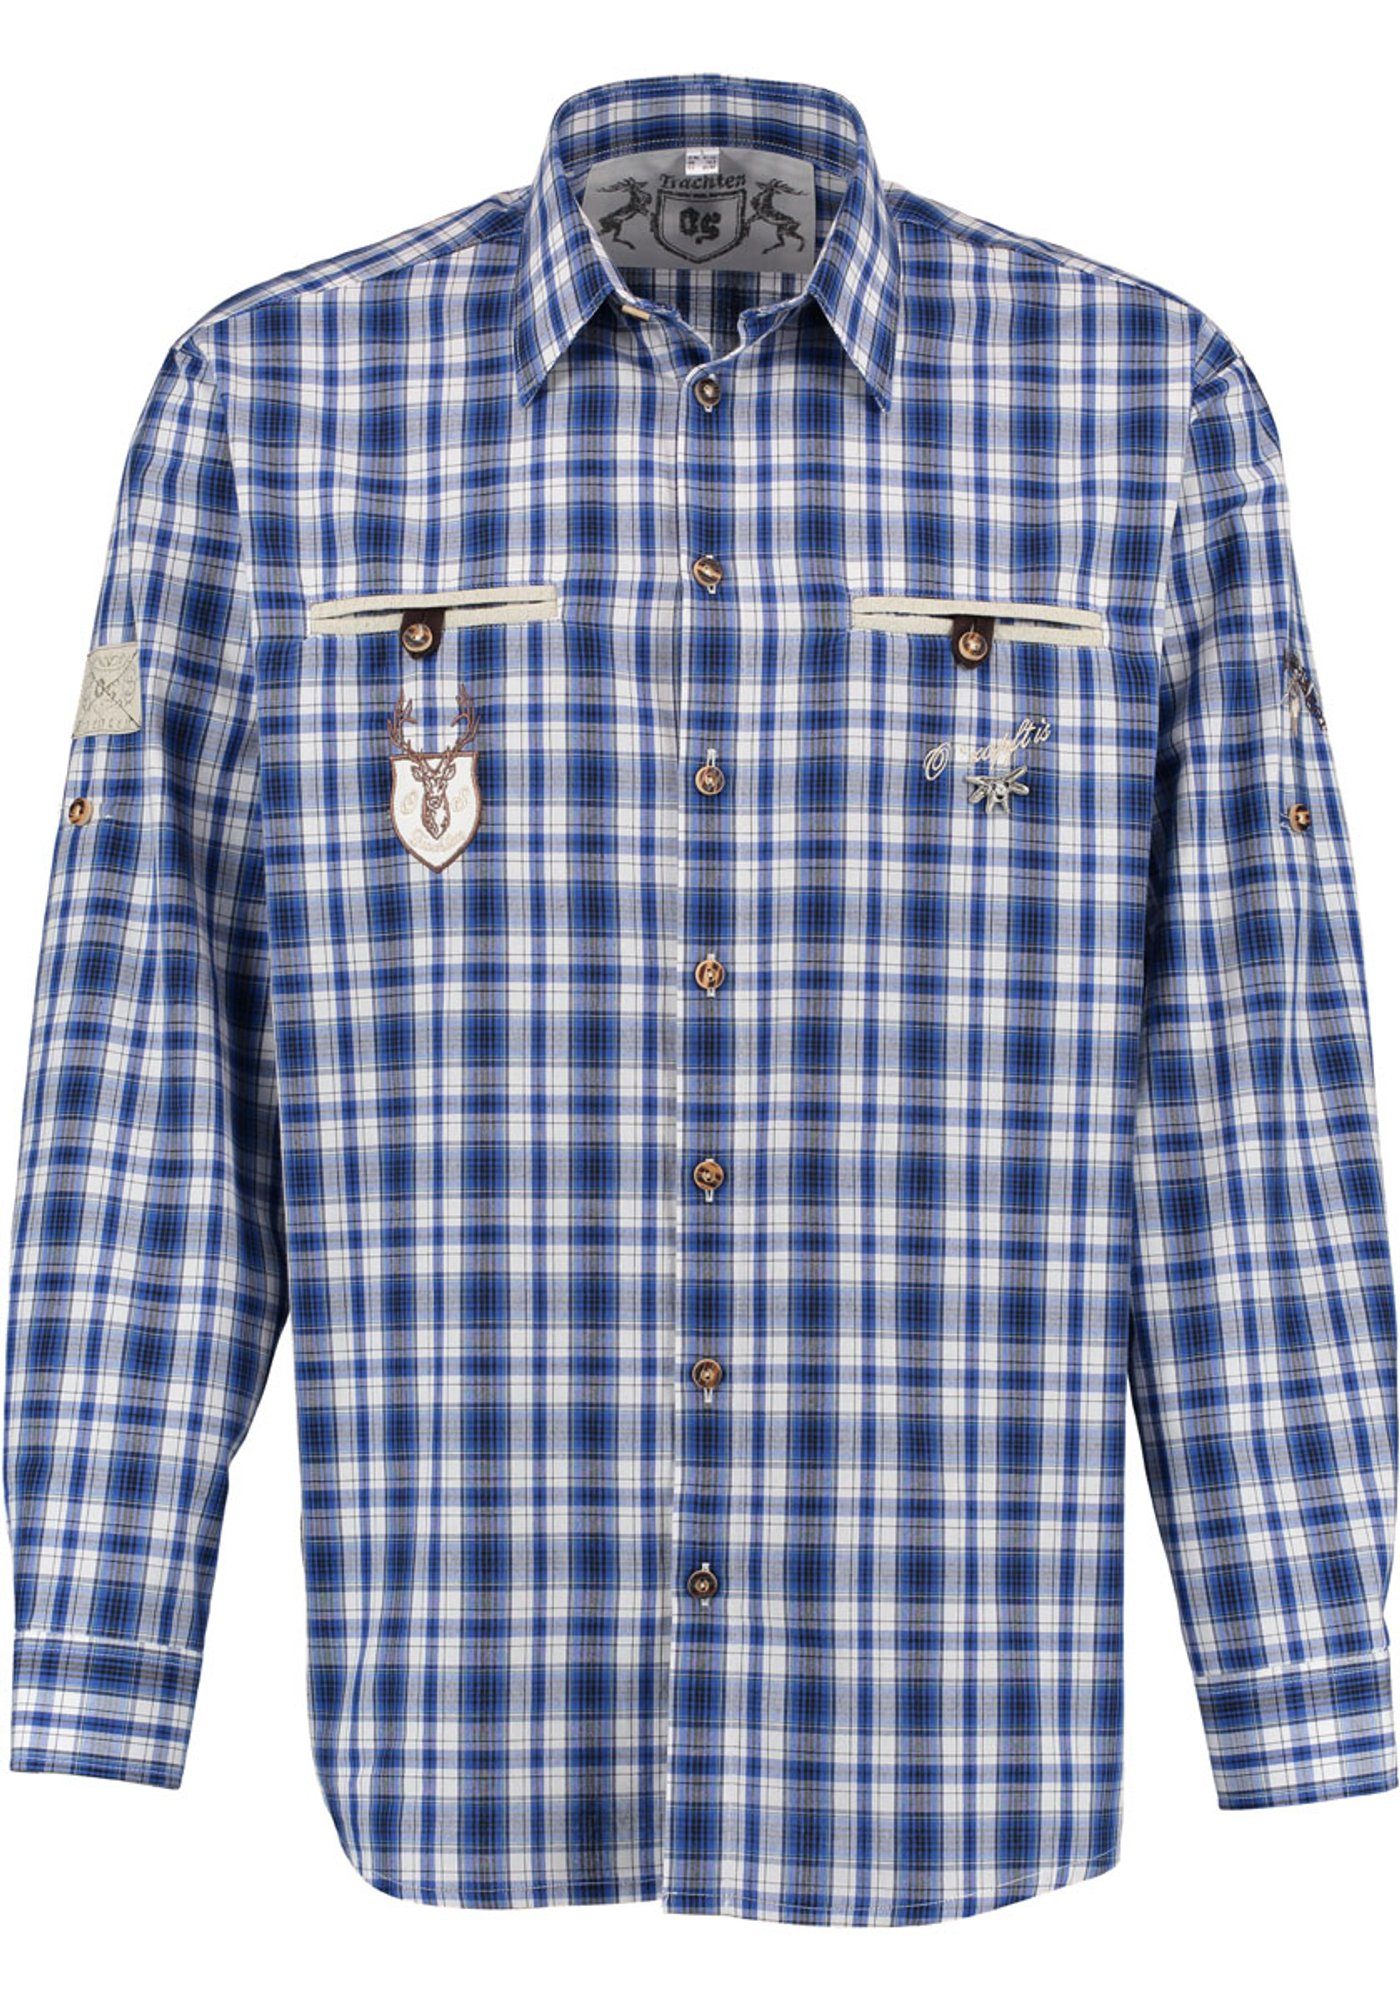 OS-Trachten Trachtenhemd Otazon Langarmhemd mit verschiedenen Stickereien und Zierteilen dunkelblau